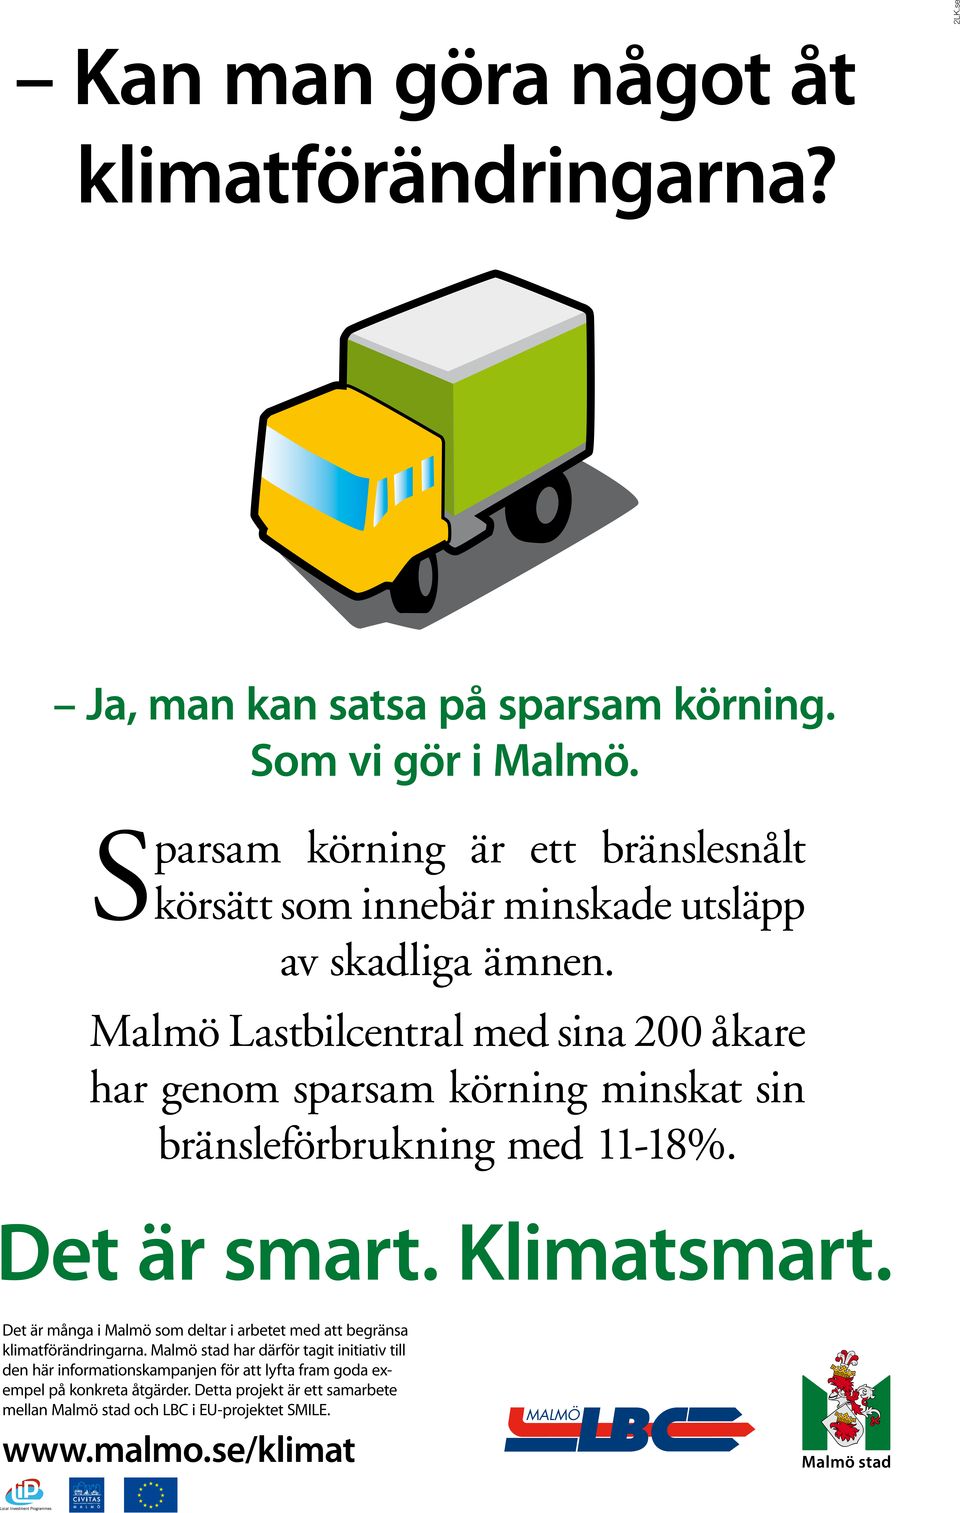 Malmö Lastbilcentral med sina 200 åkare har genom sparsam körning minskat sin bränsleförbrukning med 11-18%.